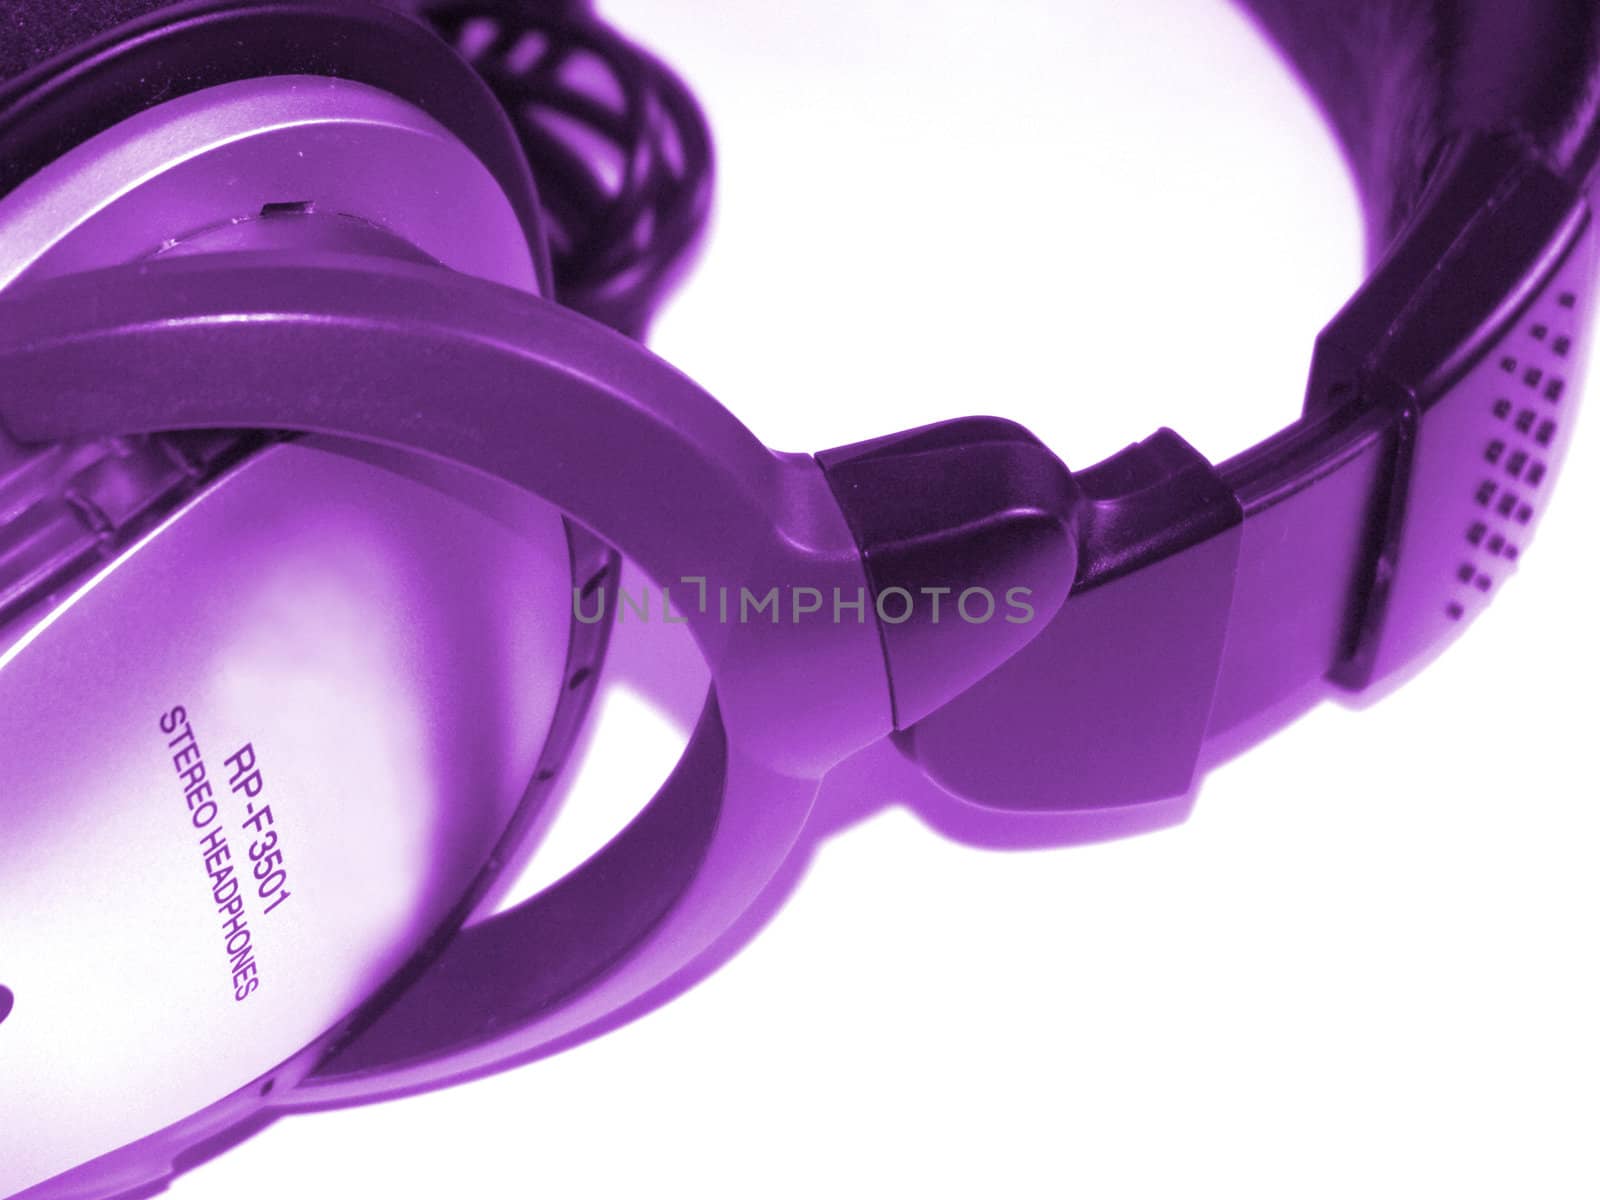 Headphones violet by soloir